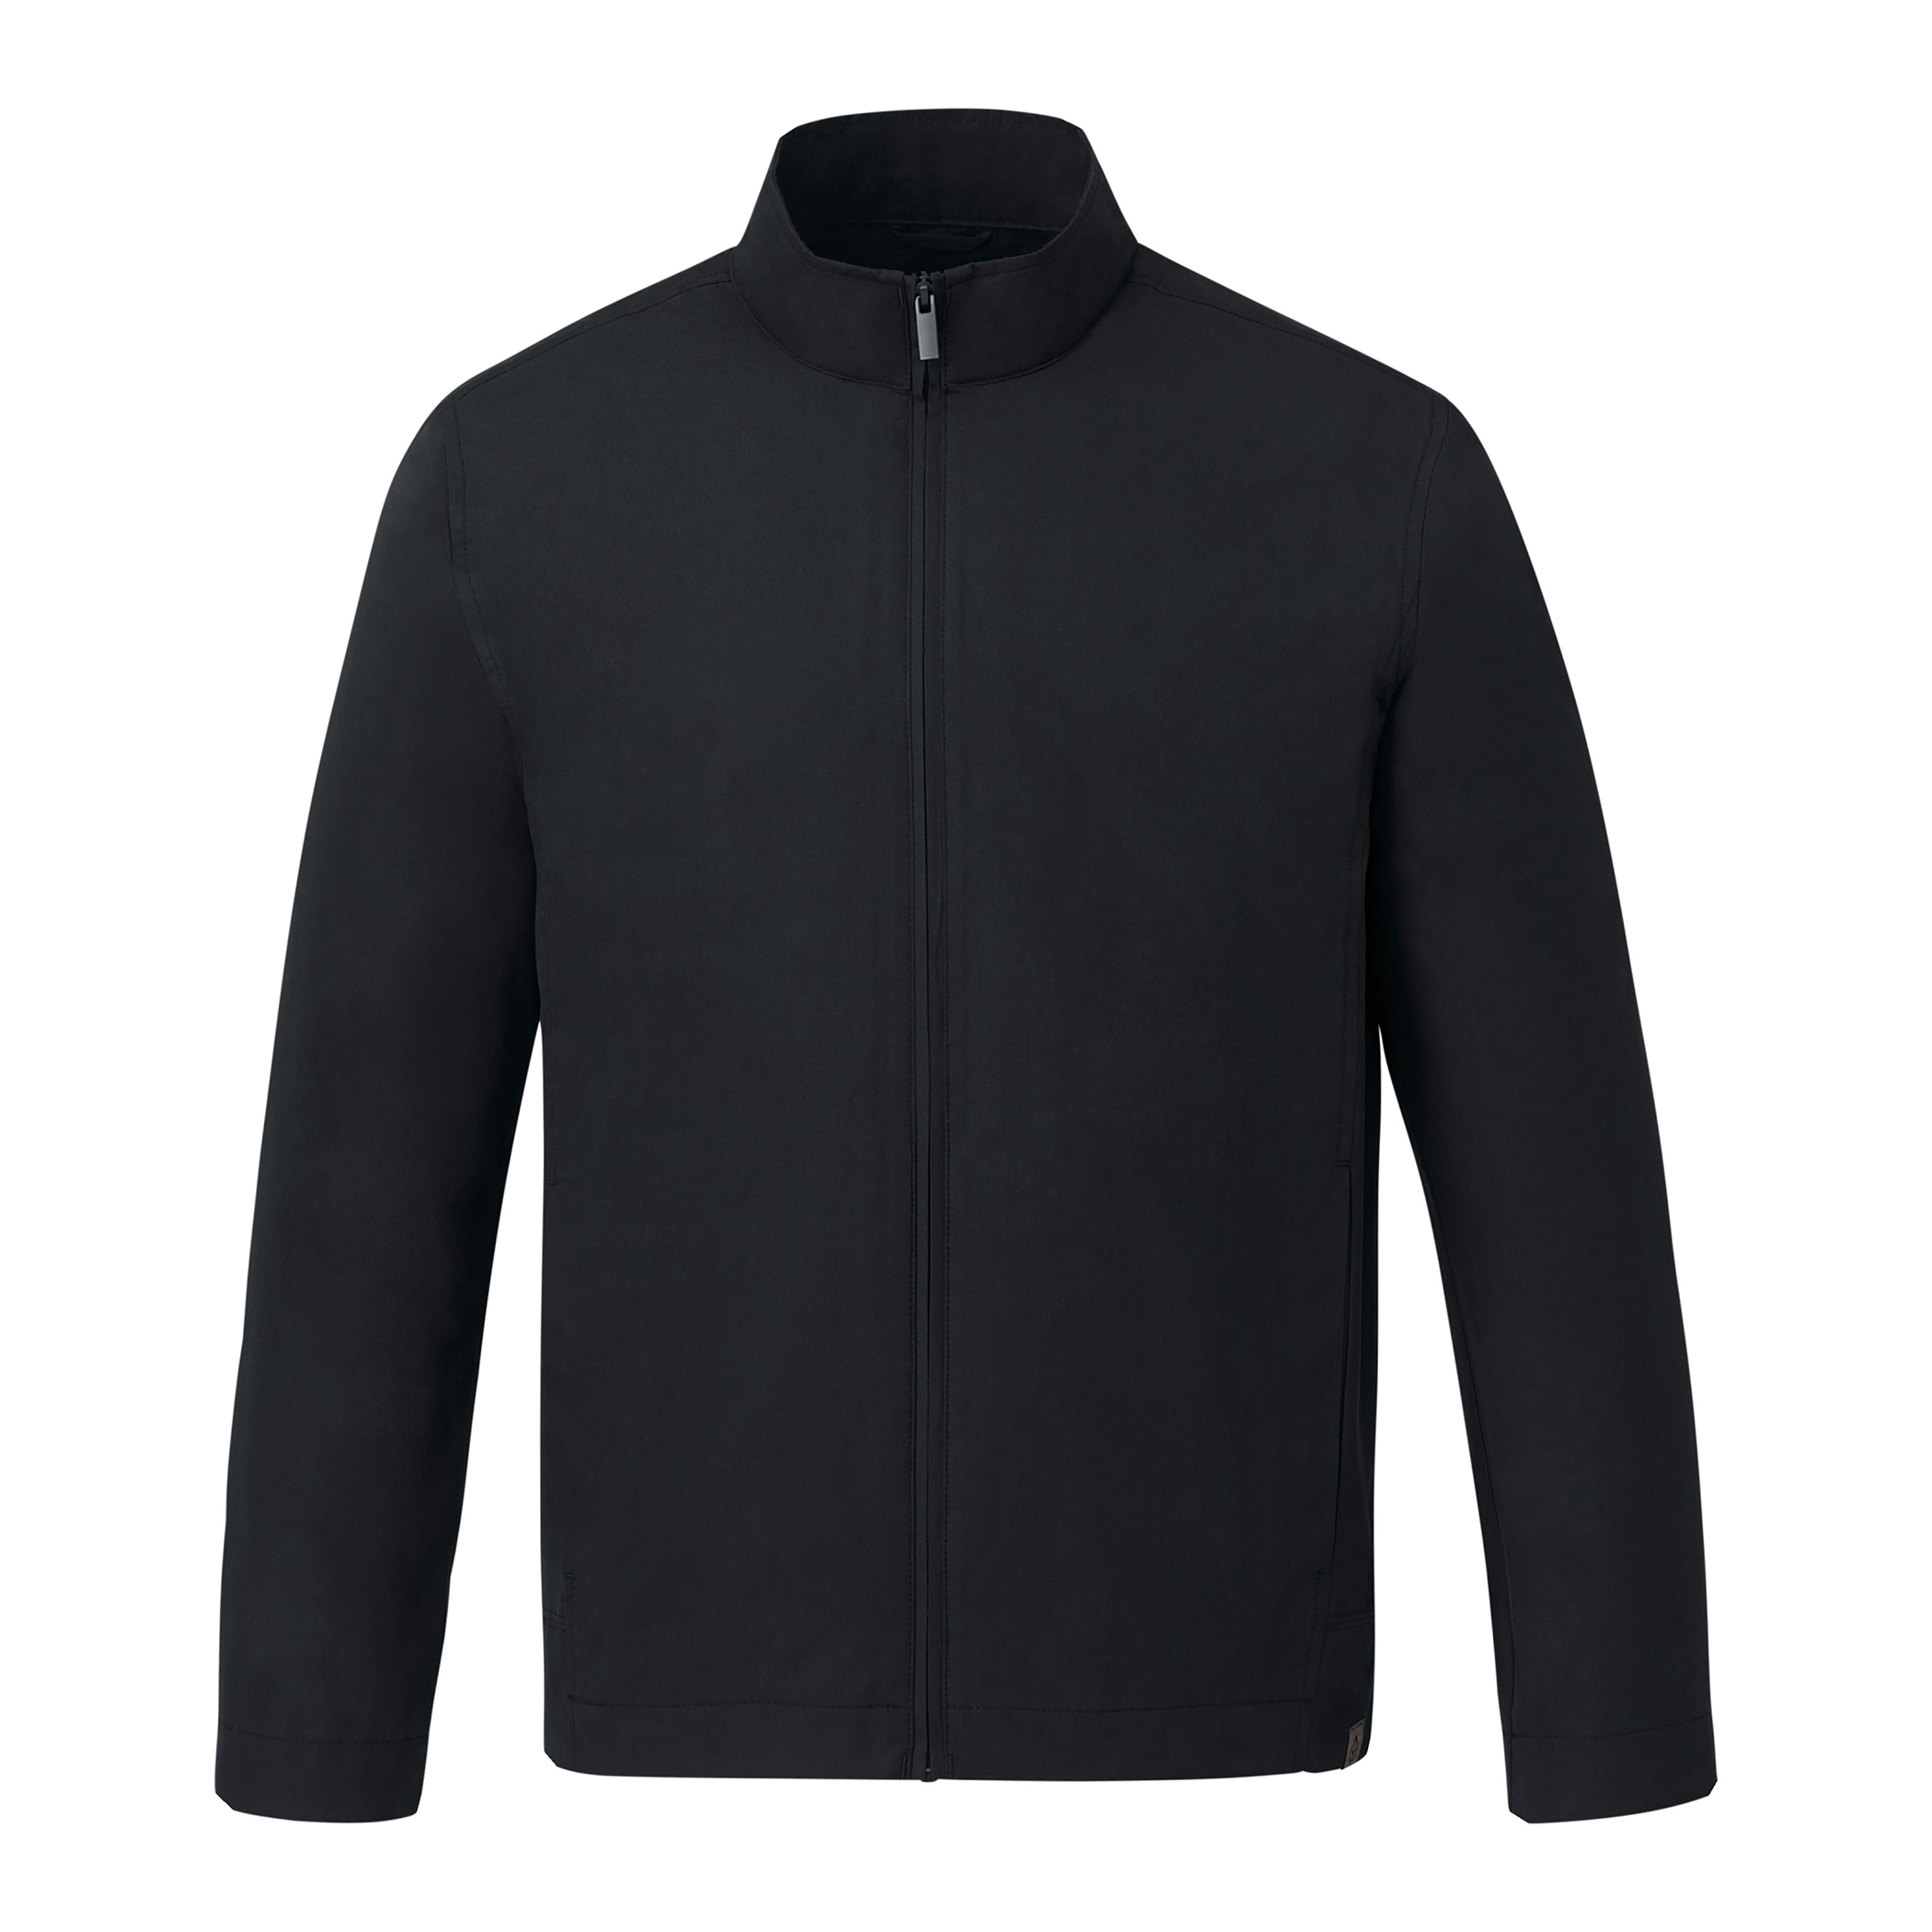 FOSTER Eco Jacket - Men's | Trimark Sportswear